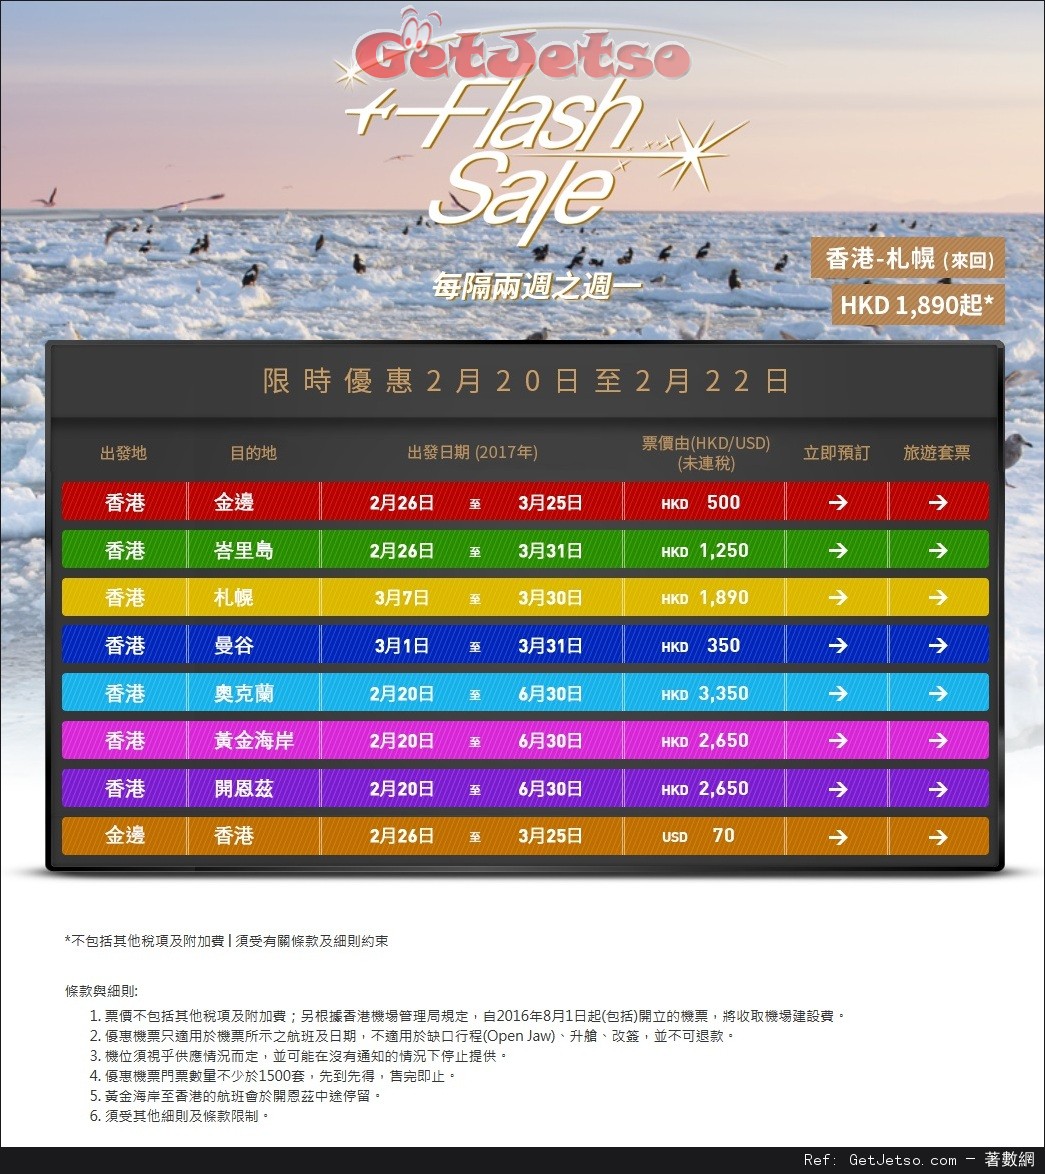 香港航空Flash Sale 限時機票優惠(至17年2月22日)圖片1